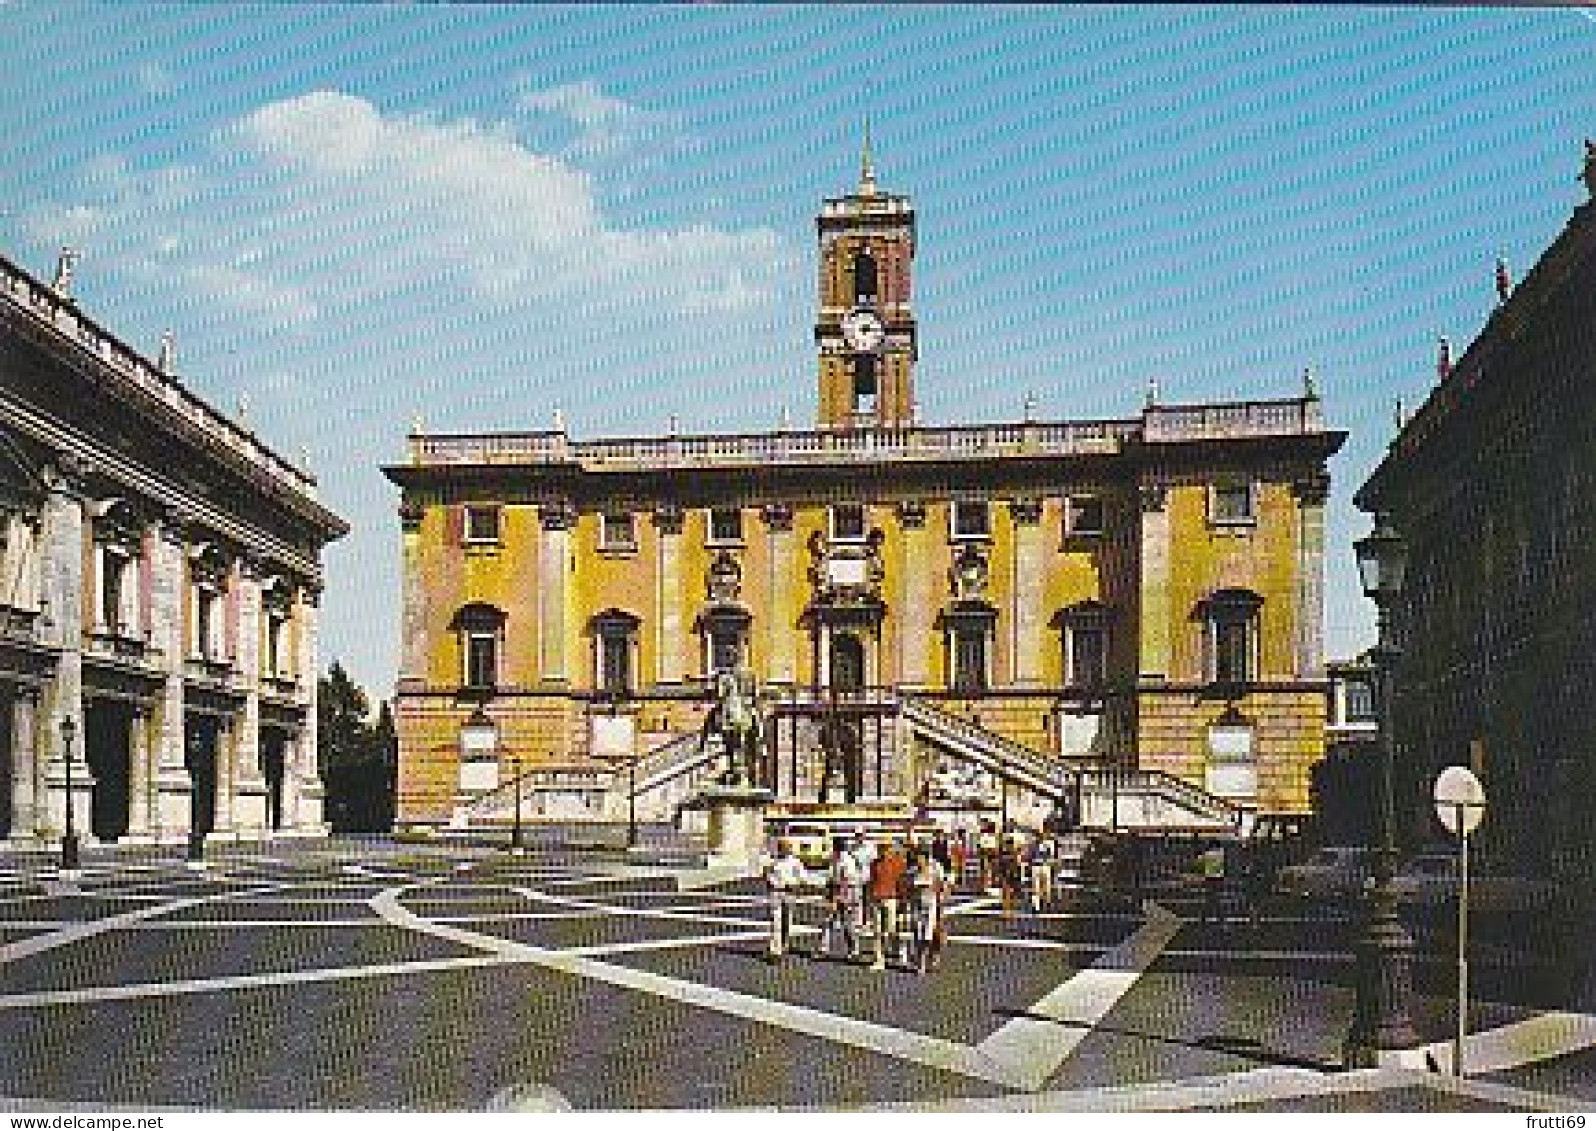 AK 216885 ITALY - Roma - Il Campidoglio - Andere Monumente & Gebäude